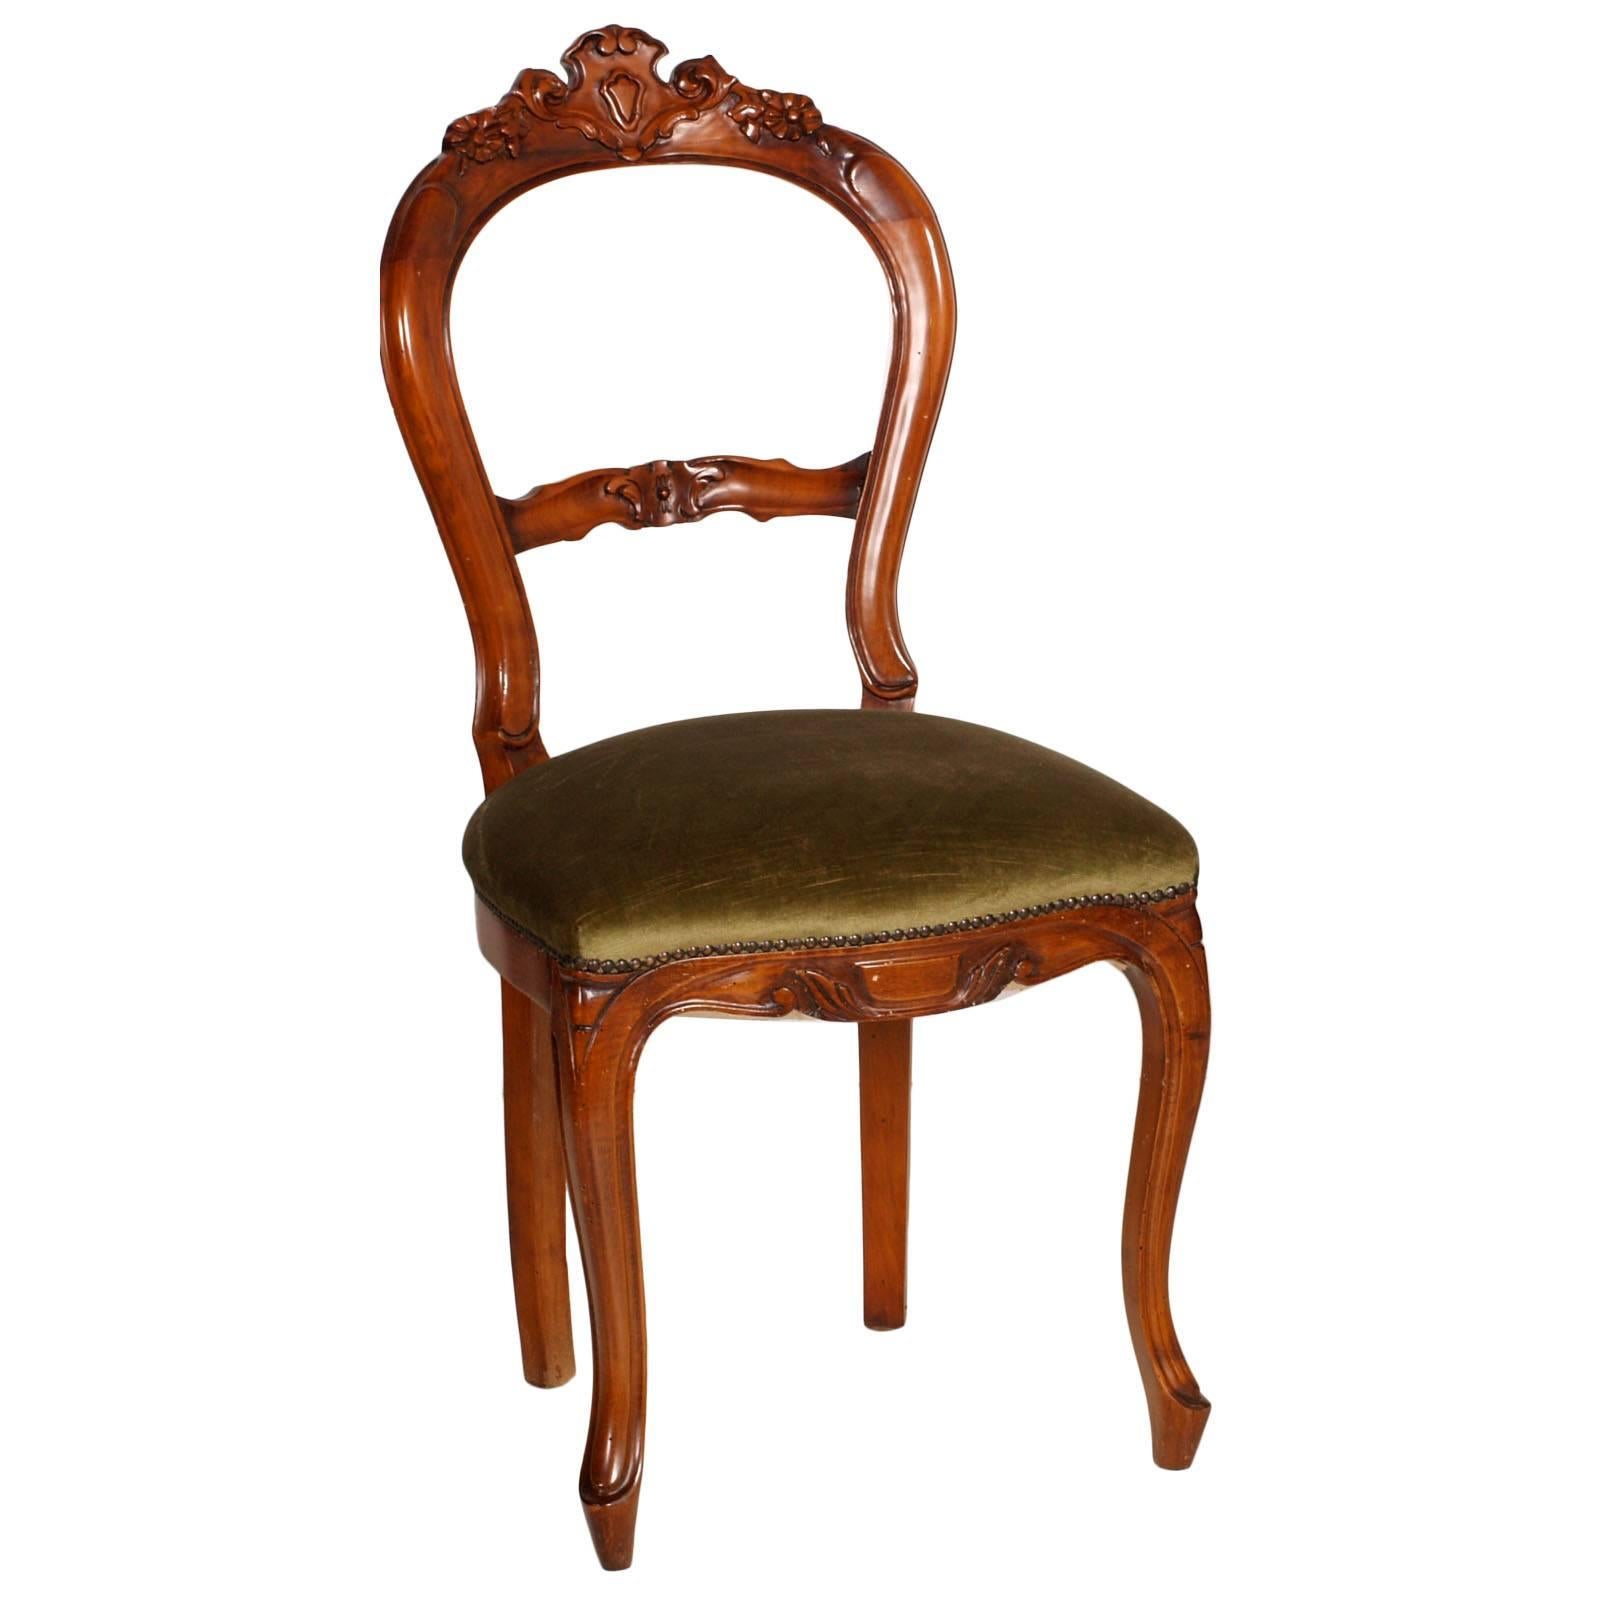 Anfang des 20. Jahrhunderts sechs Louis-Philippe-Stühle aus handgeschnitztem blondem Nussbaumholz mit Federsitz, gepolstert mit klarem grünen Samt. Die Polsterung ist noch brauchbar, aber wir können sie auf Wunsch neu polstern. Wachs poliert.

Maße: